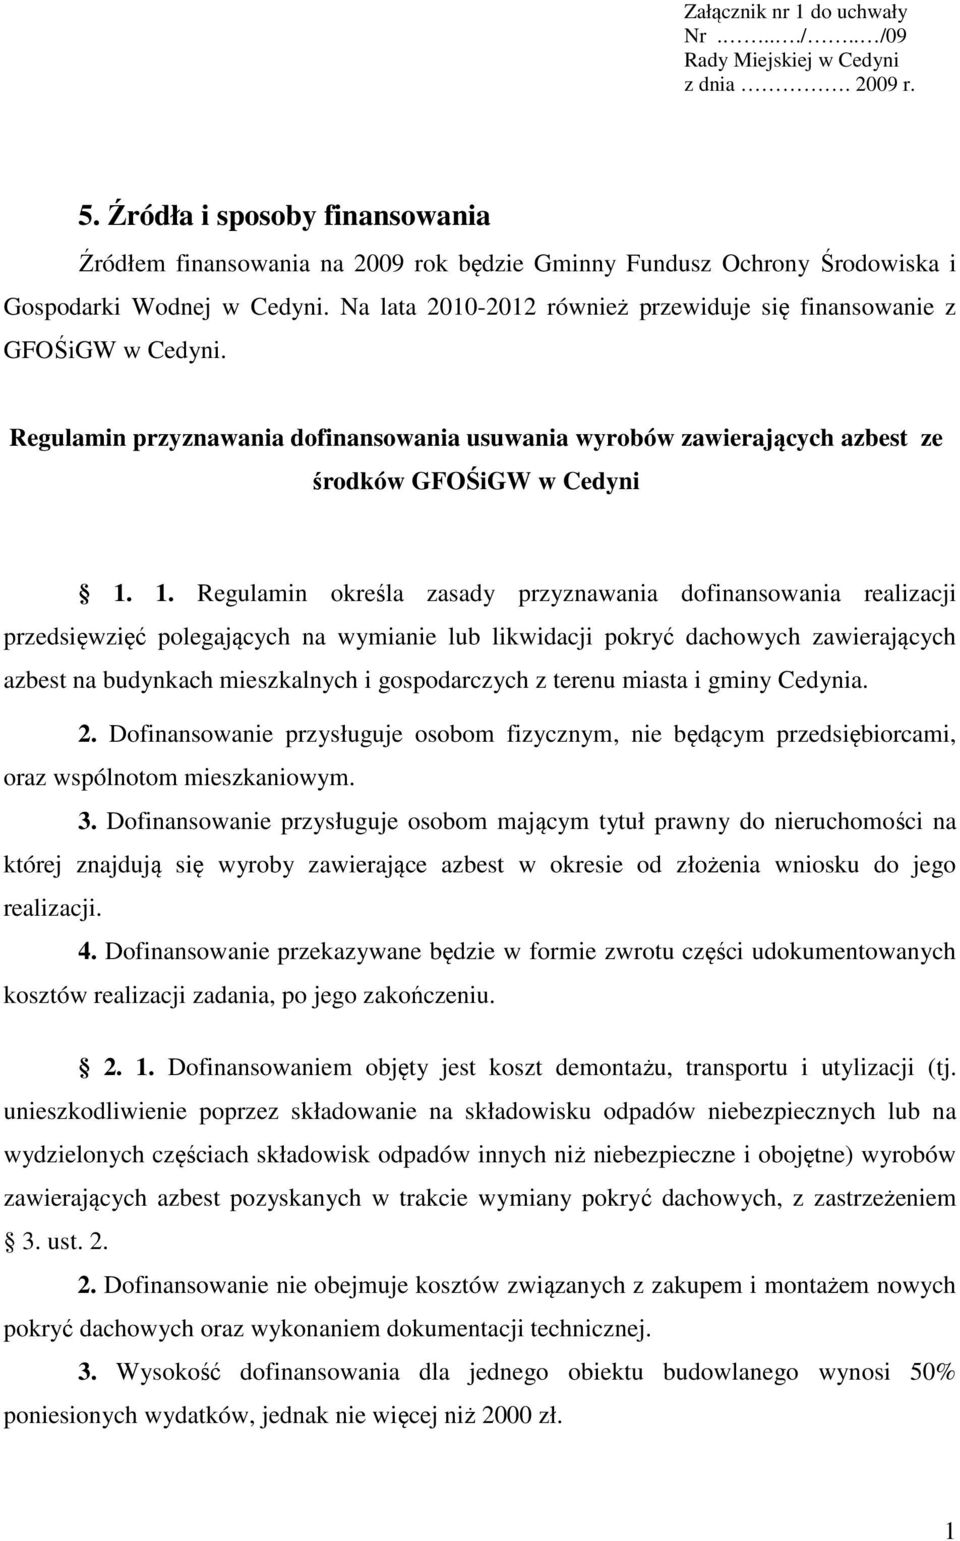 Na lata 2010-2012 również przewiduje się finansowanie z GFOŚiGW w Cedyni. Regulamin przyznawania dofinansowania usuwania wyrobów zawierających azbest ze środków GFOŚiGW w Cedyni 1.